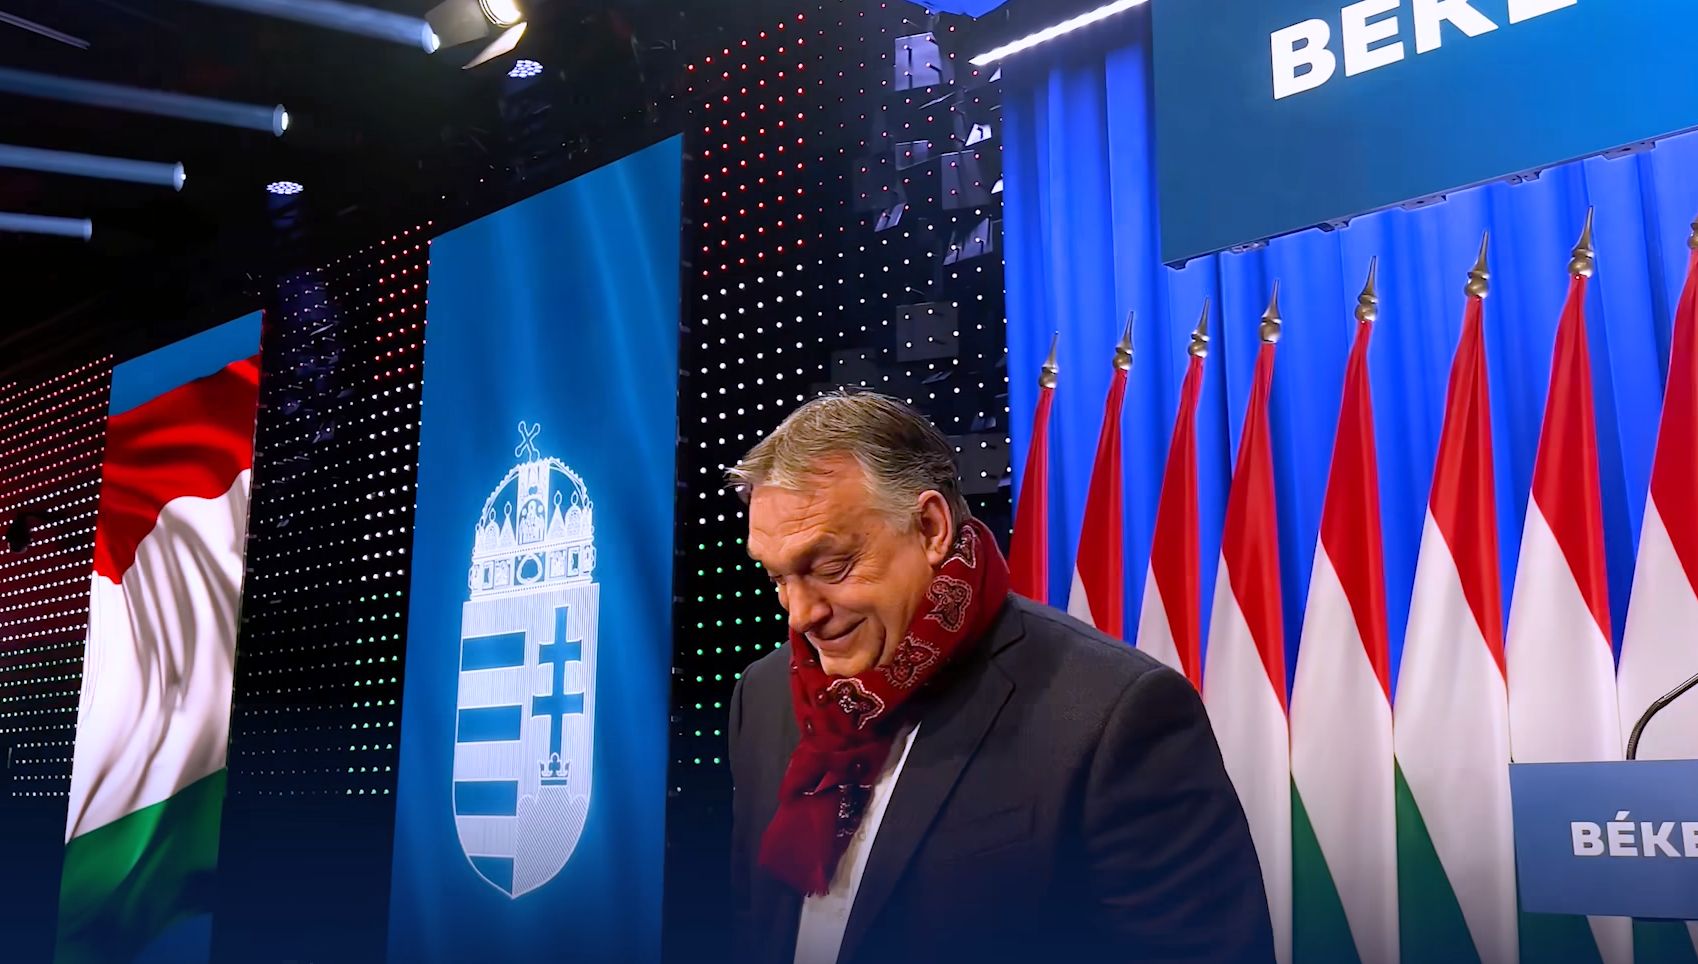 Hol a beszédem? Megírta valaki? – kérdezte Orbán Viktor 